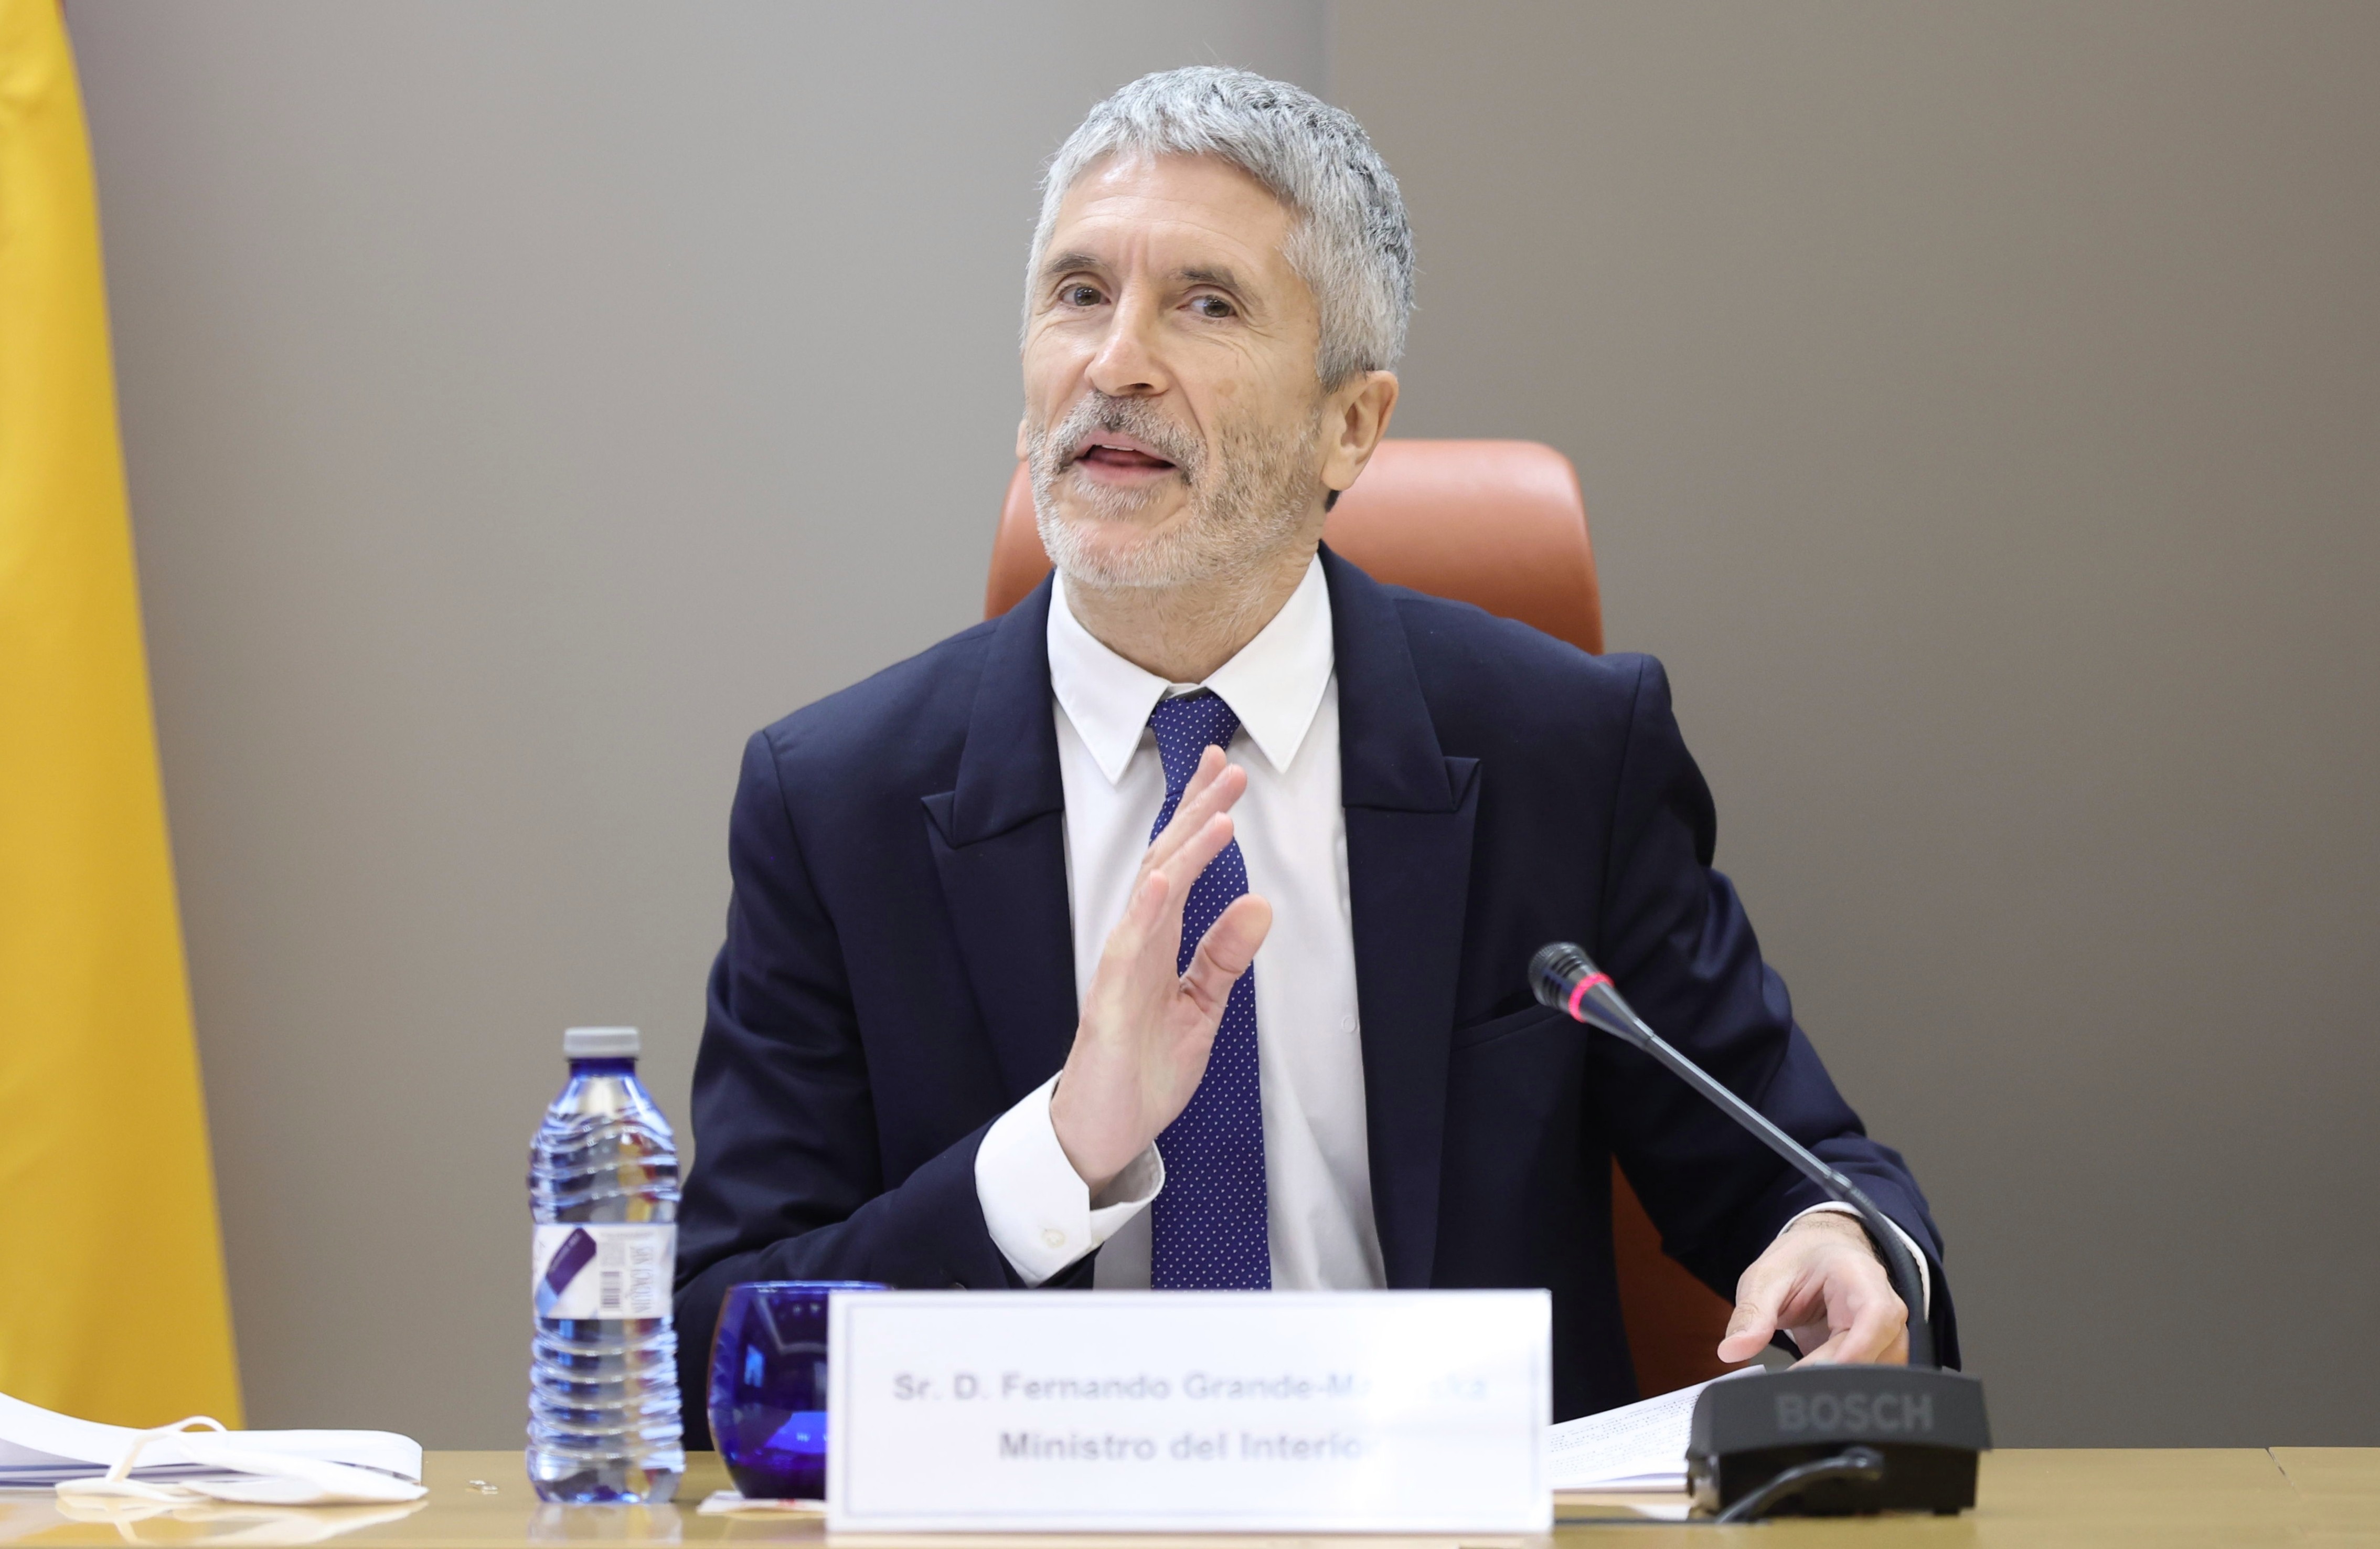 Cargando…
El ministro de Interior, Fernando Grande-Marlaska, en la presentación del balance de siniestralidad vial de 2021